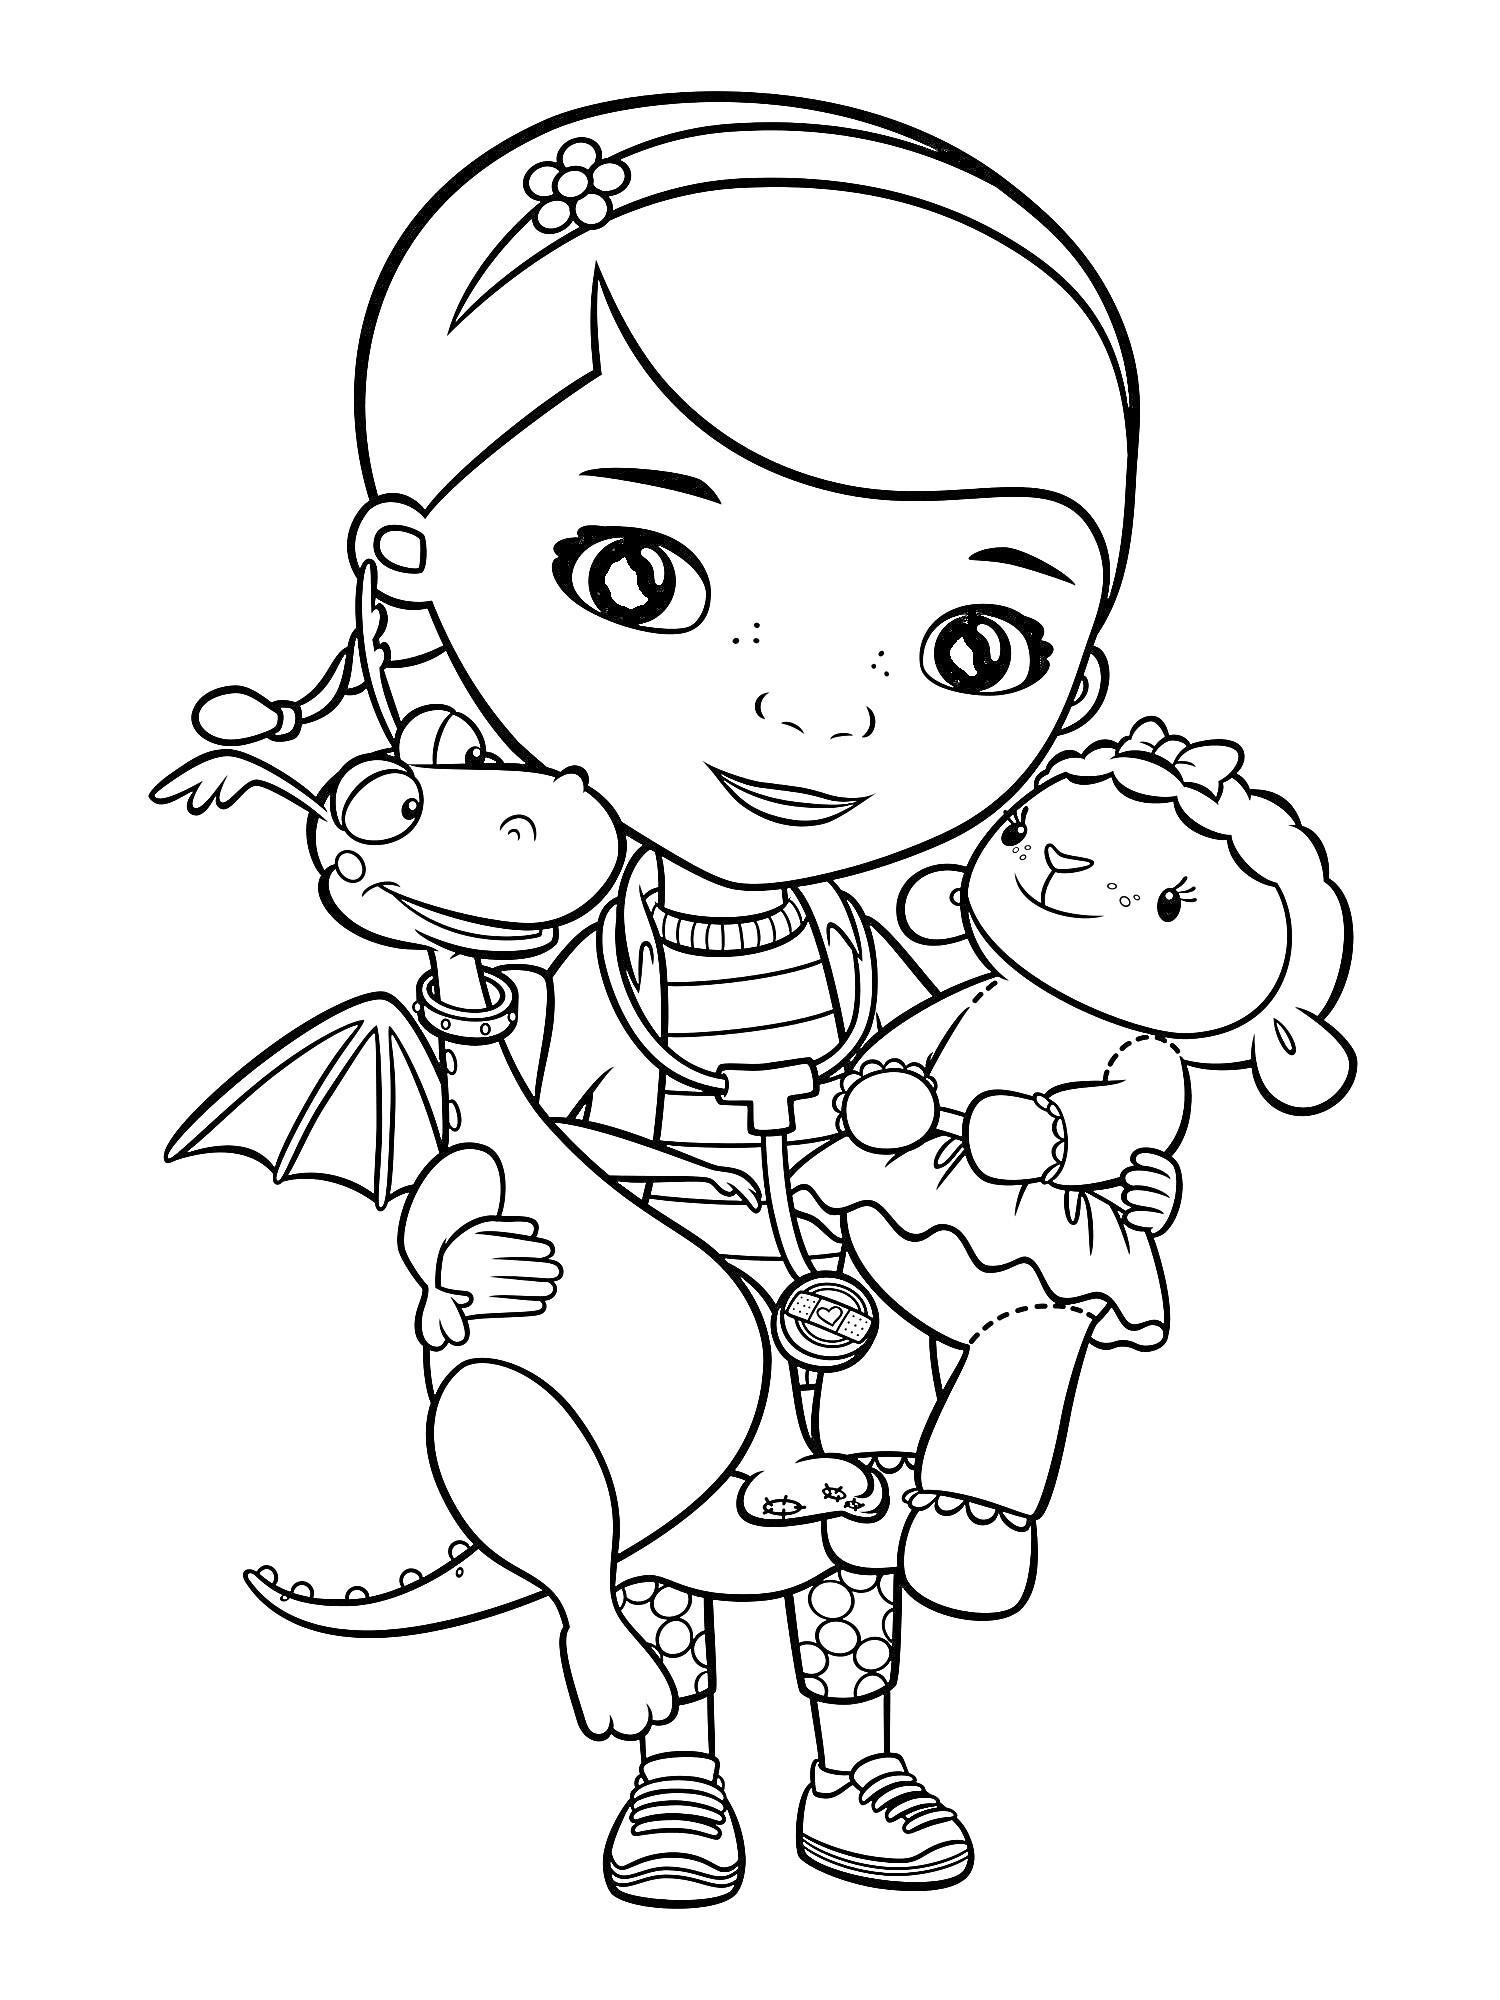 Раскраска Доктор Плюшева с игрушечным драконом и овечкой